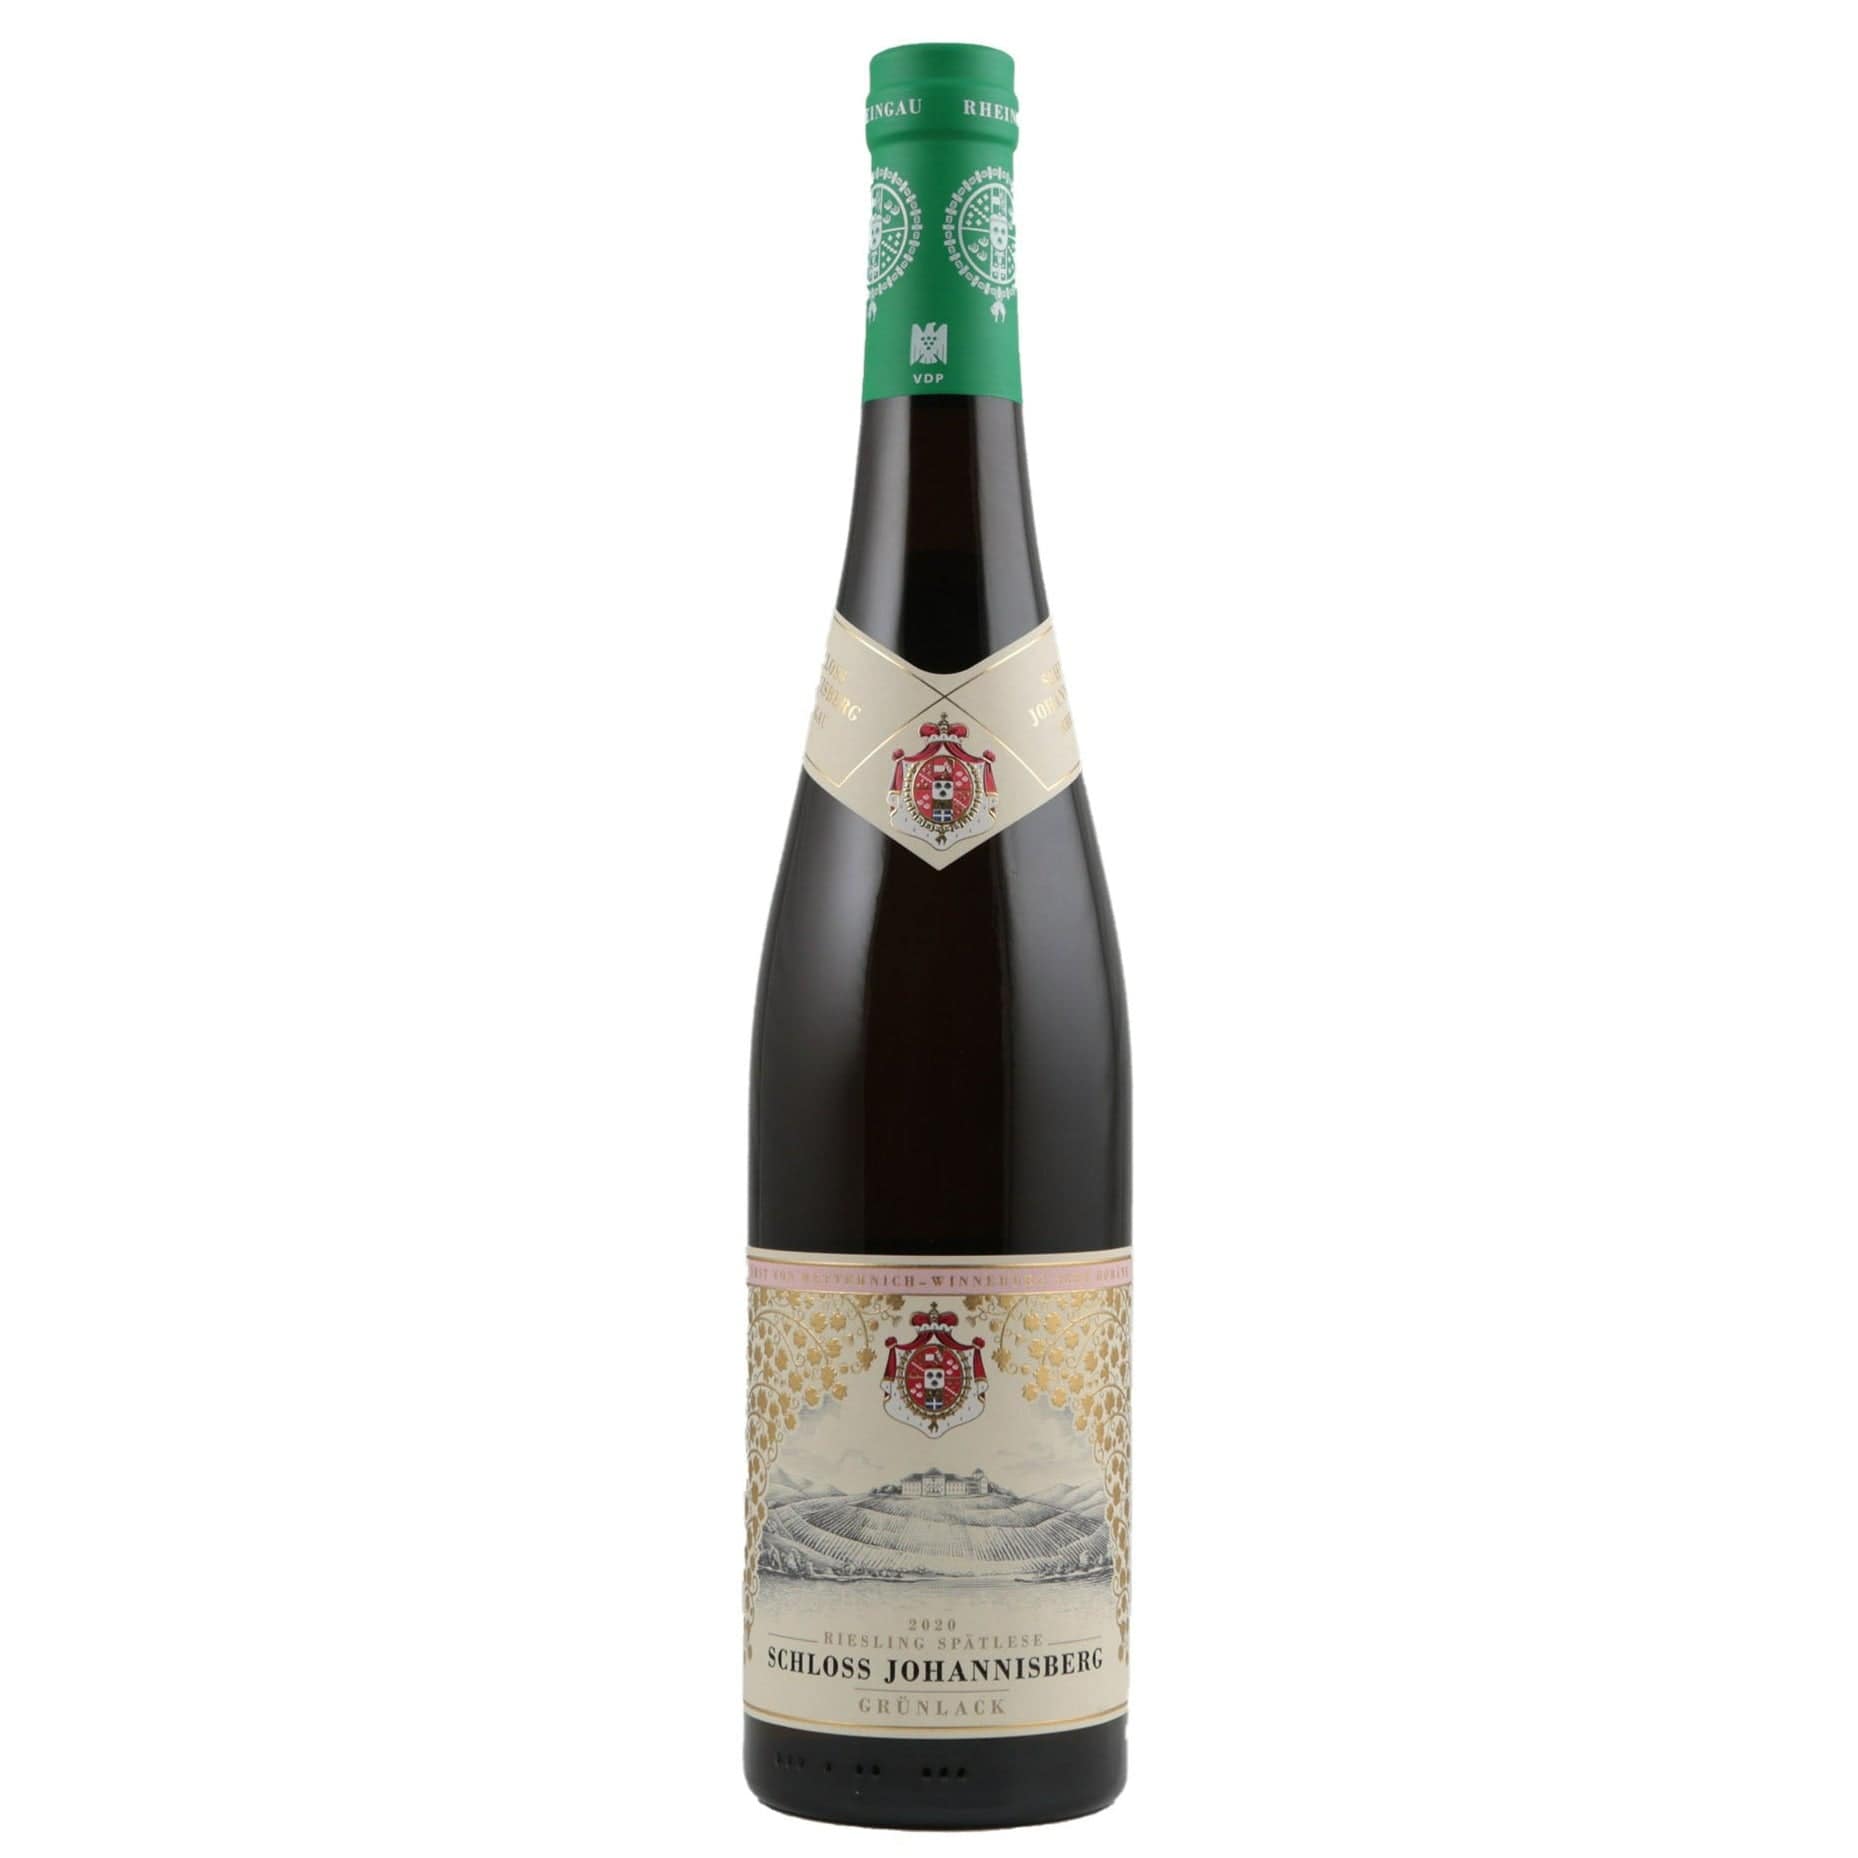 Single bottle of White wine Schloss Johannisberg, Grunlack Riesling Spatlese, Johannisberg, 2020 100% Riesling